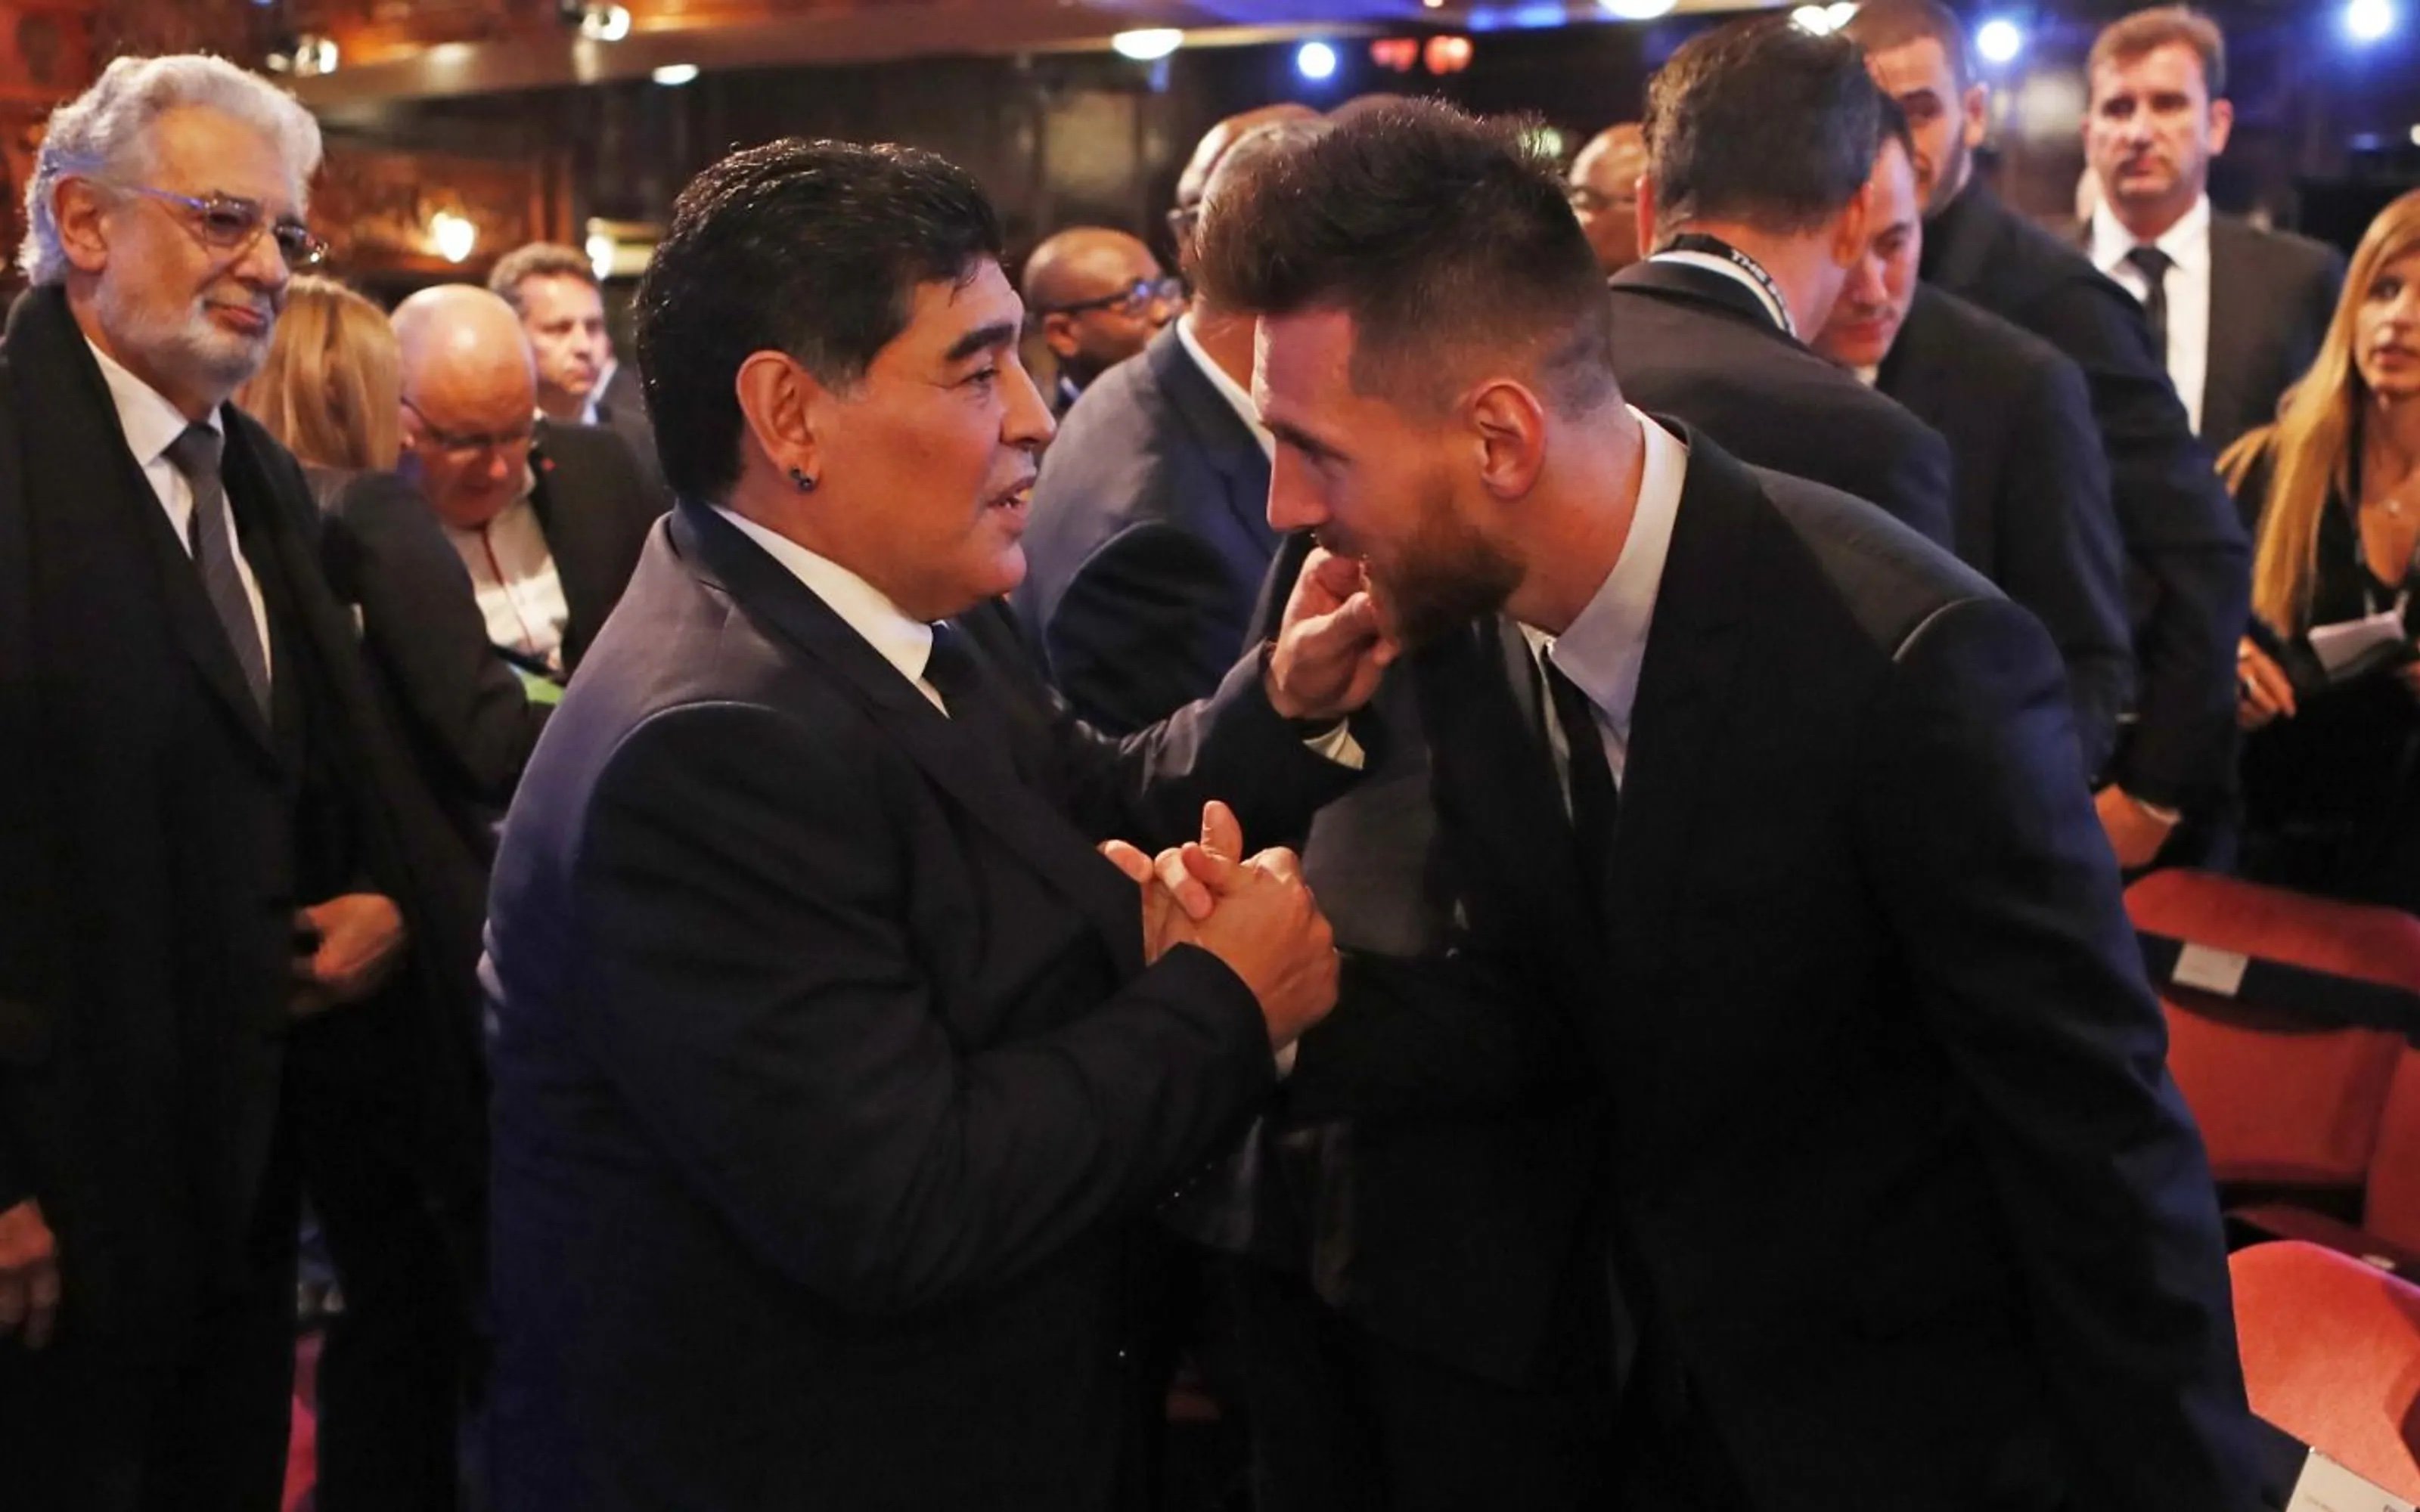 L'emotiva dedicatòria de Messi a Maradona: "Etern"